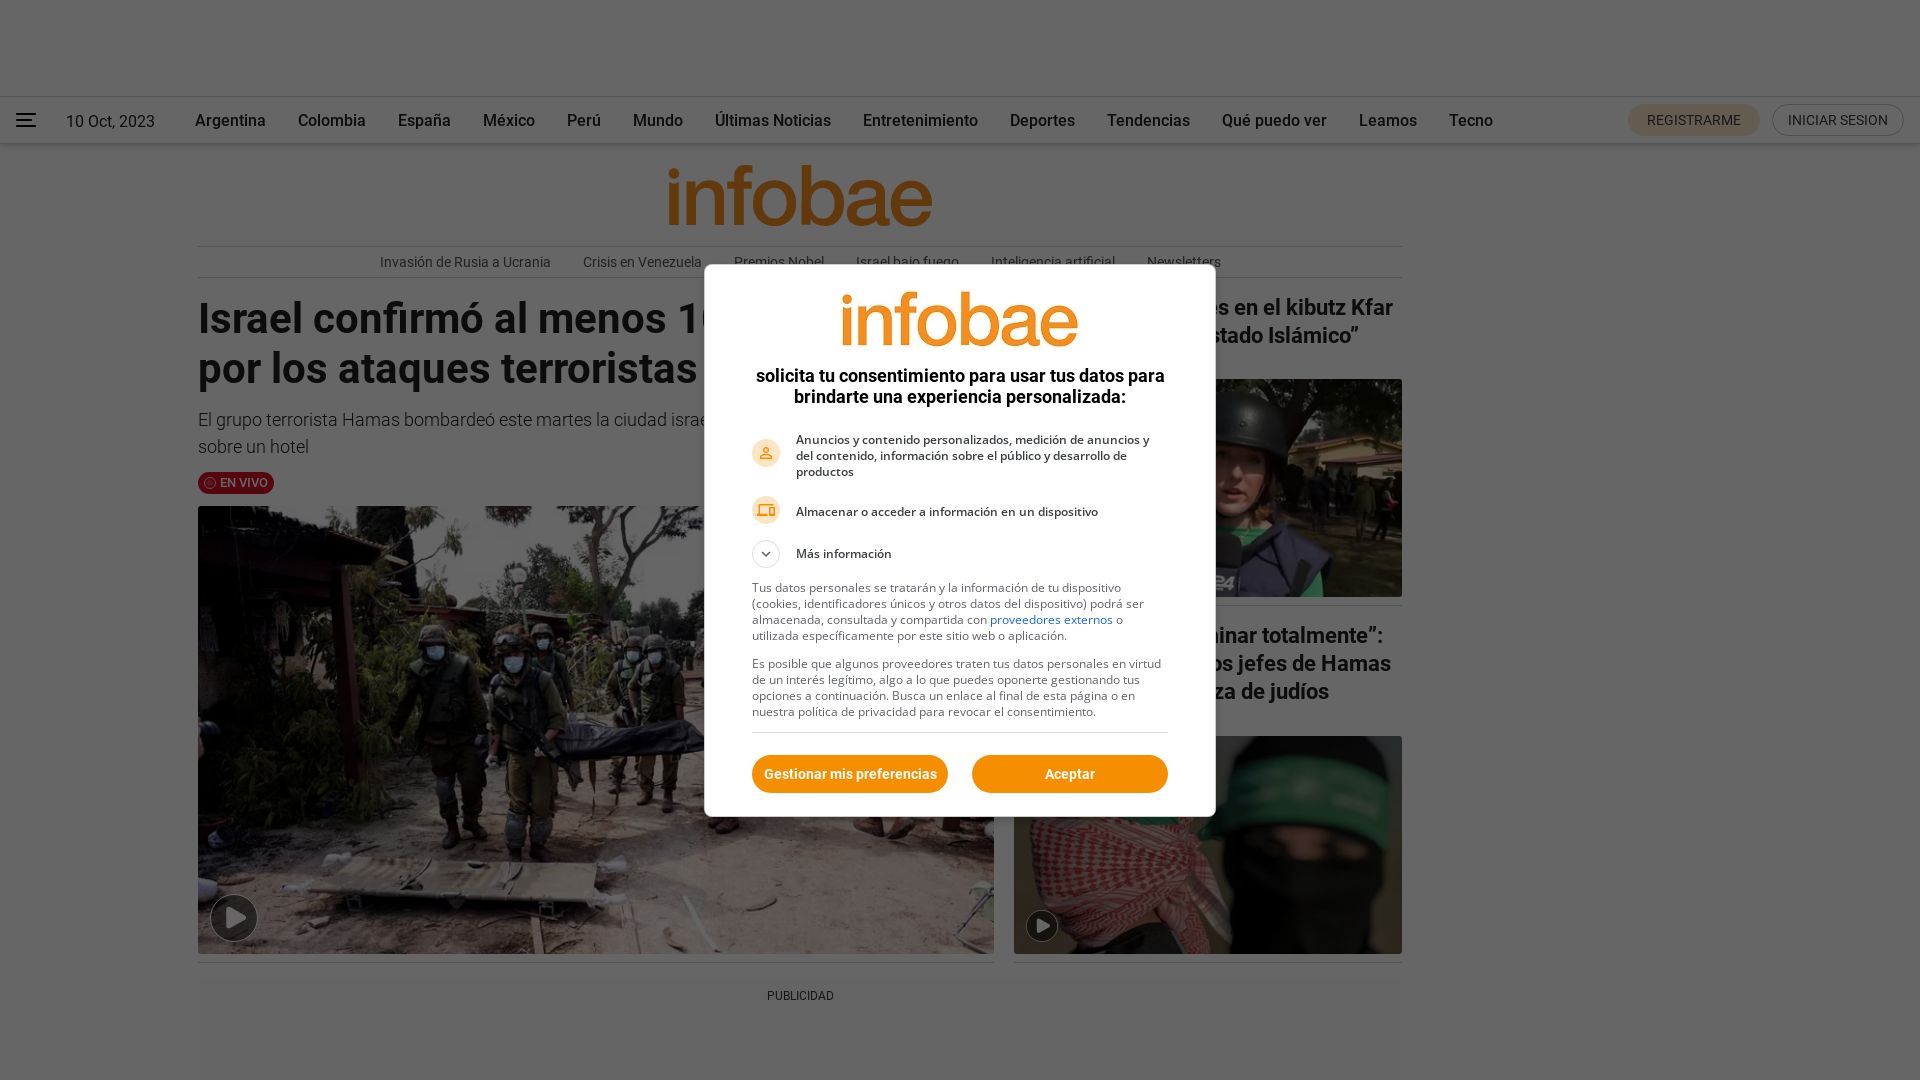 Website status infobae.com is   ONLINE